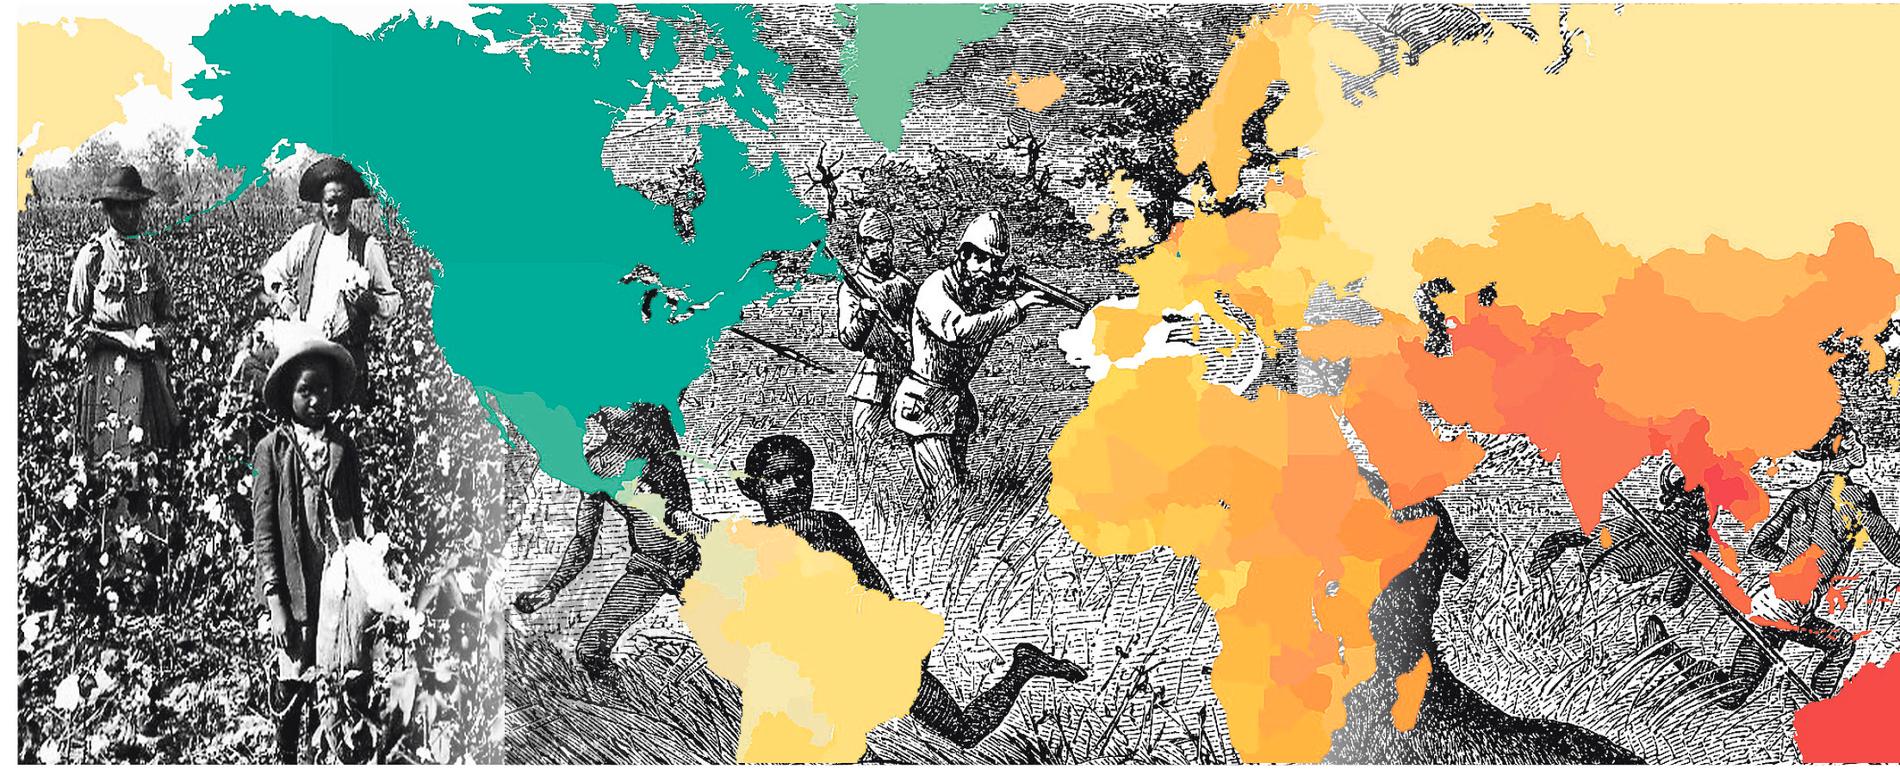 Med tio kartor som utgångspunkt greppar boken ”Geografins makt” hela världshistorien. Men fenomen som slaveri och kolonialism går inte att förklara med uteslutande geografiska förklaringar, skriver Ulrika Stahre.